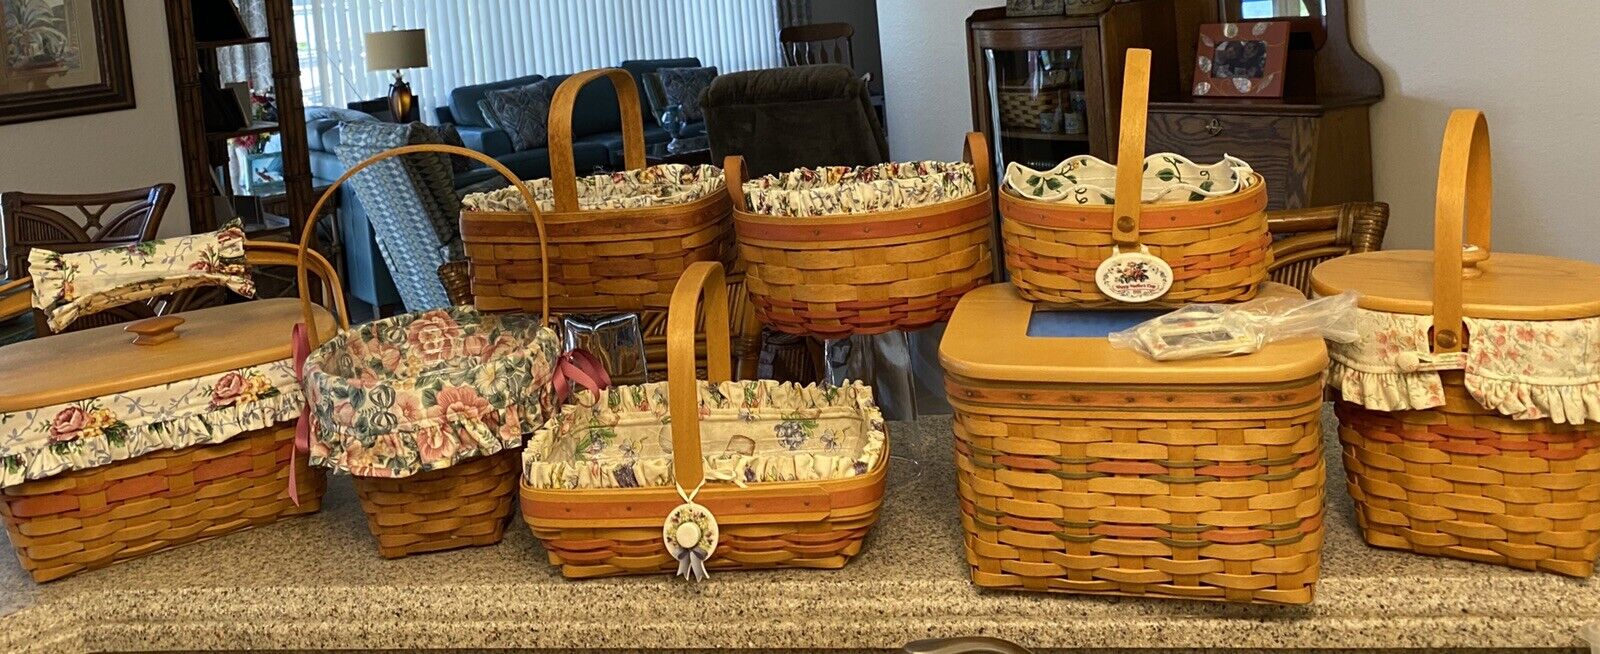 Longaberger Basket Lot Of 8 Mothers Day Baskets & More